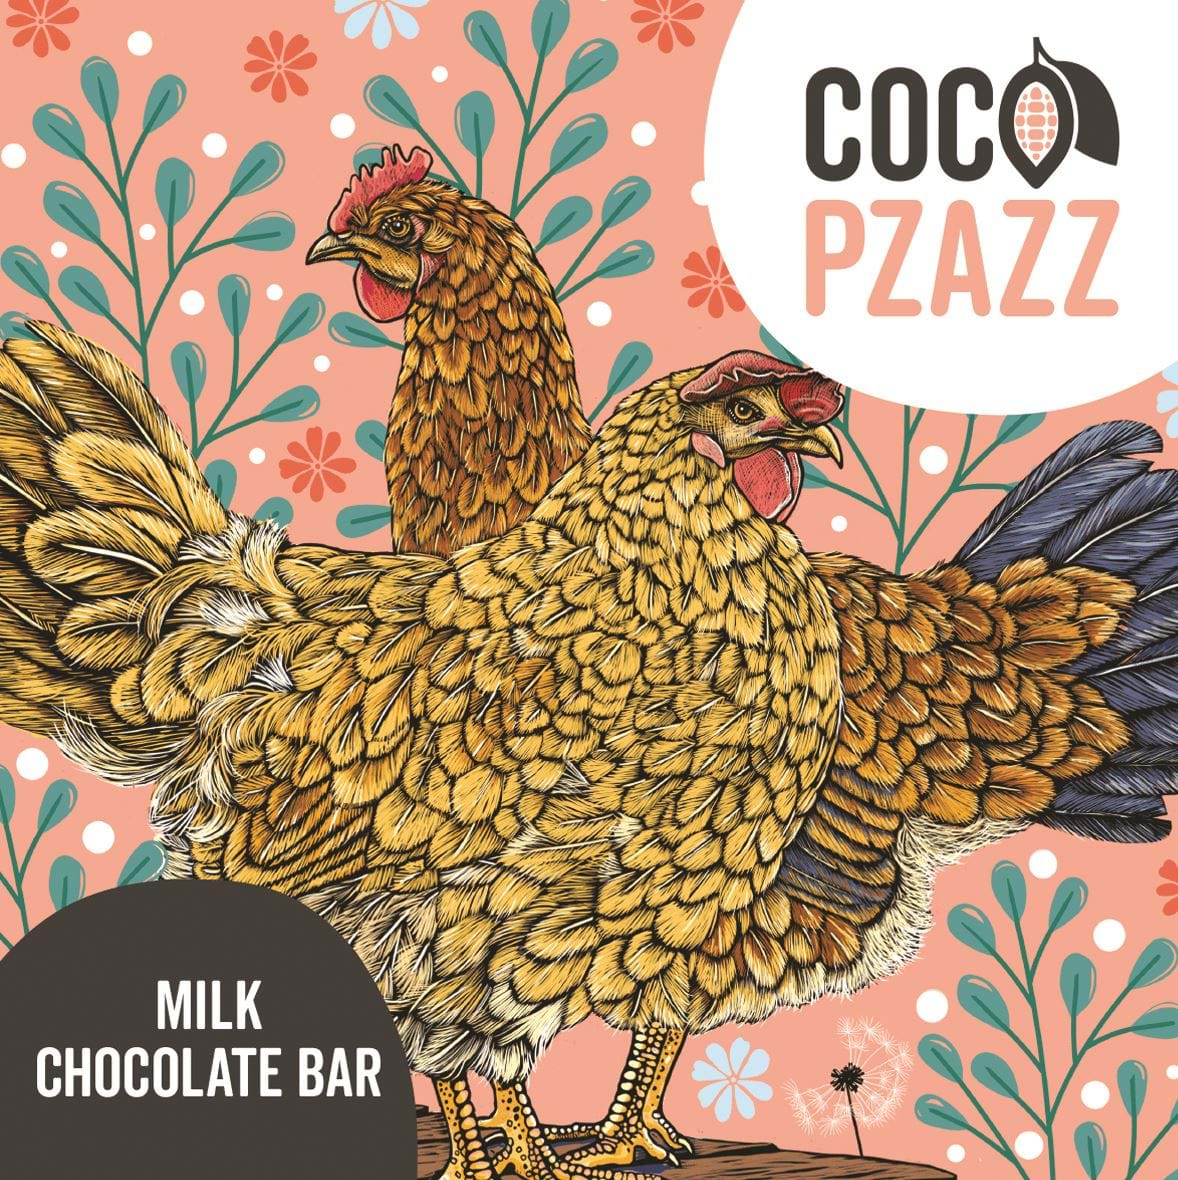 Hens Milk Chocolate Bar by Coco Pzazz